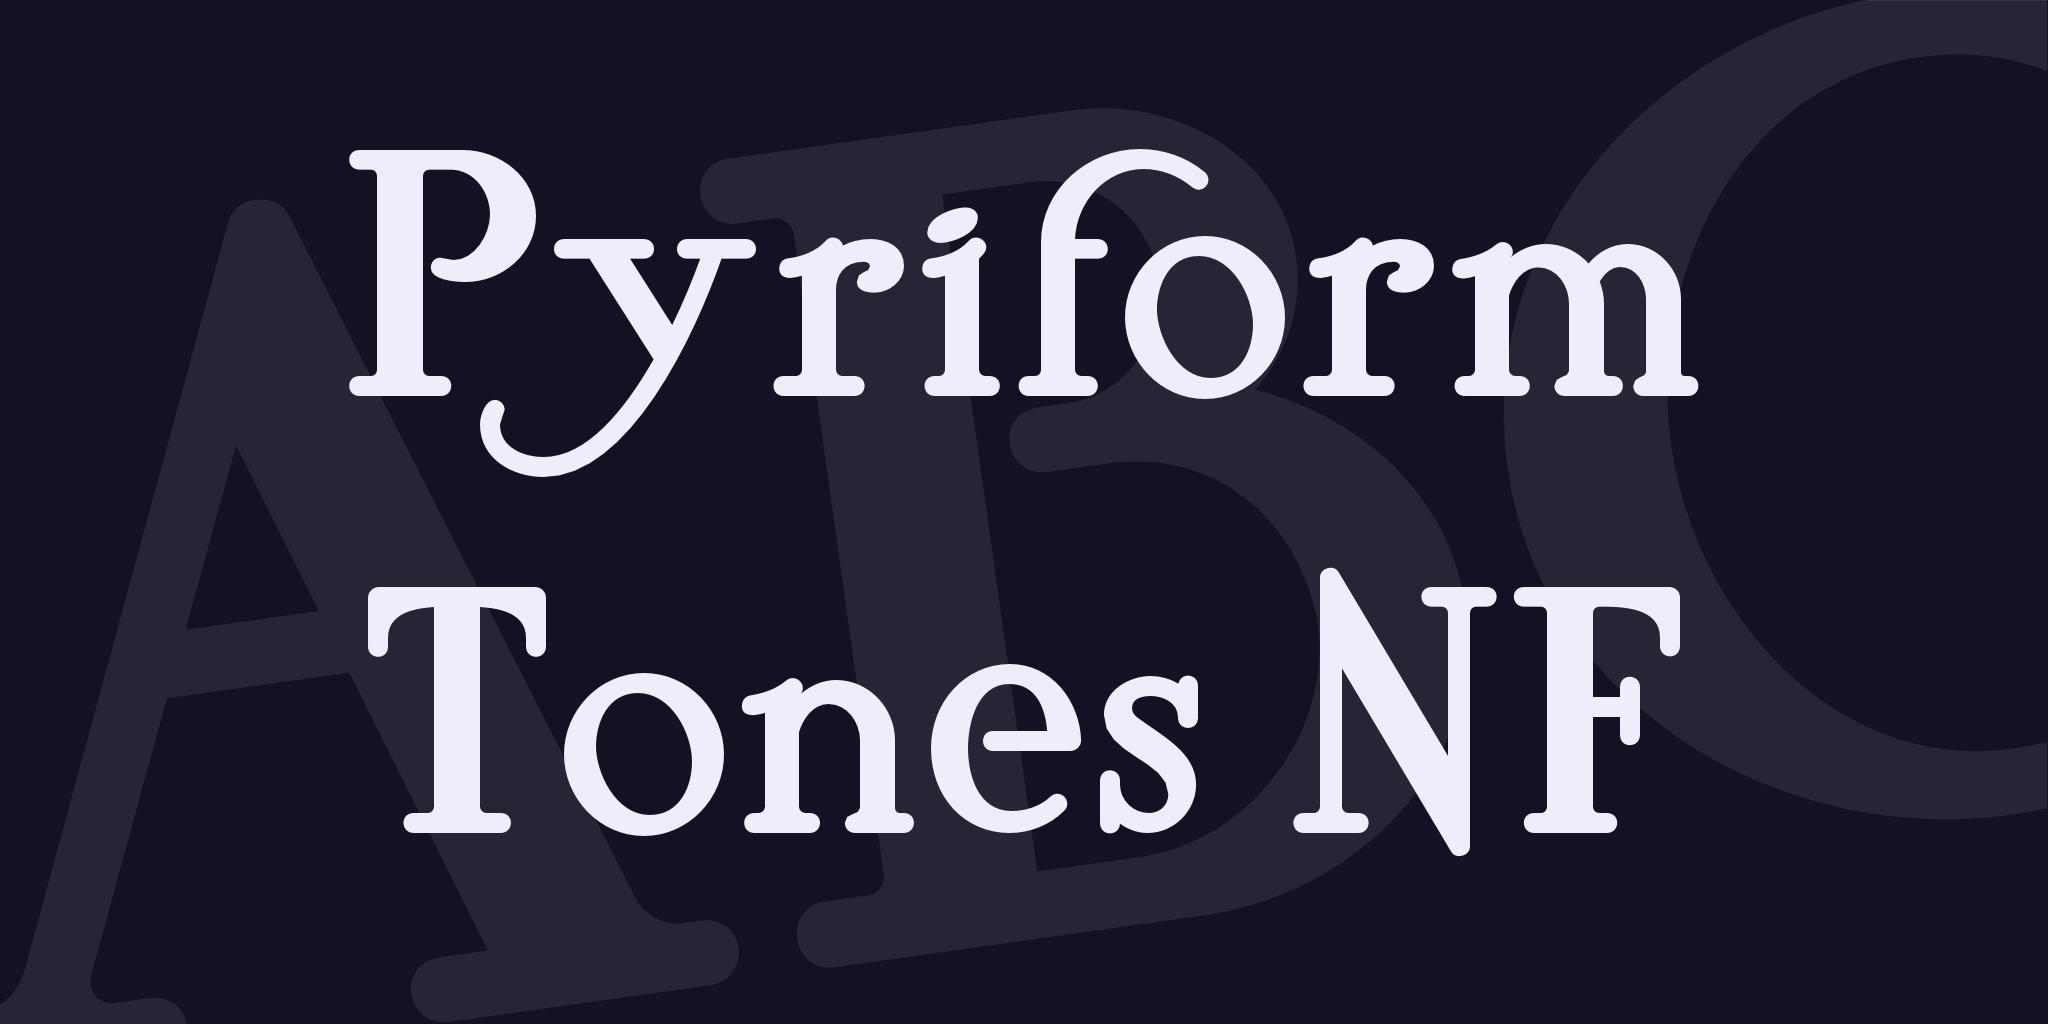 Pyriform Tones Nf